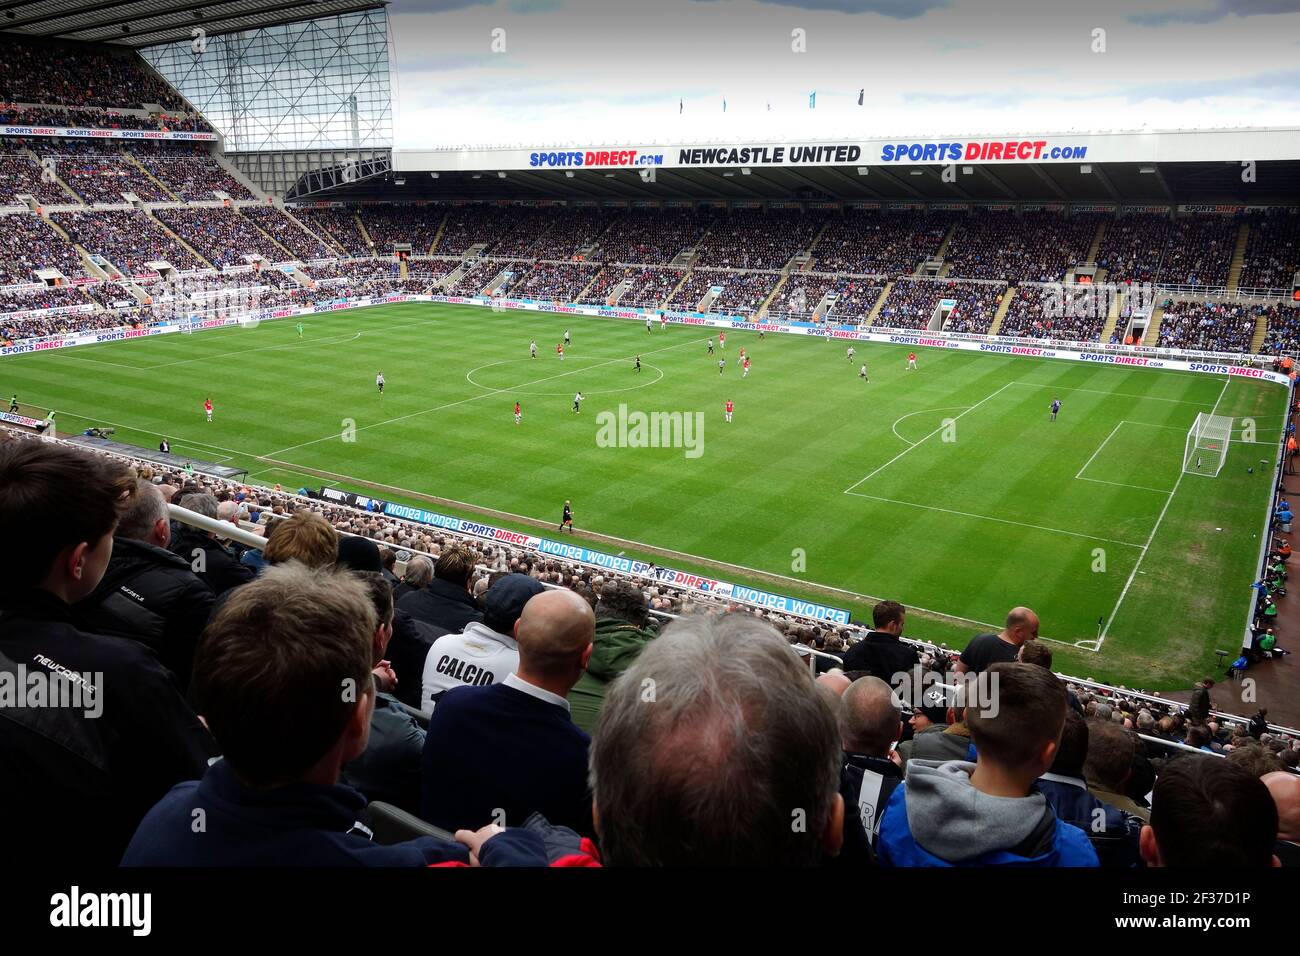 Newcastle United Fc Blick Auf Die St James Park Fussball Stadion In Der Stadt Newcastle Upon Tyne Tyne Und Wear England Grossbritannien Stockfotografie Alamy